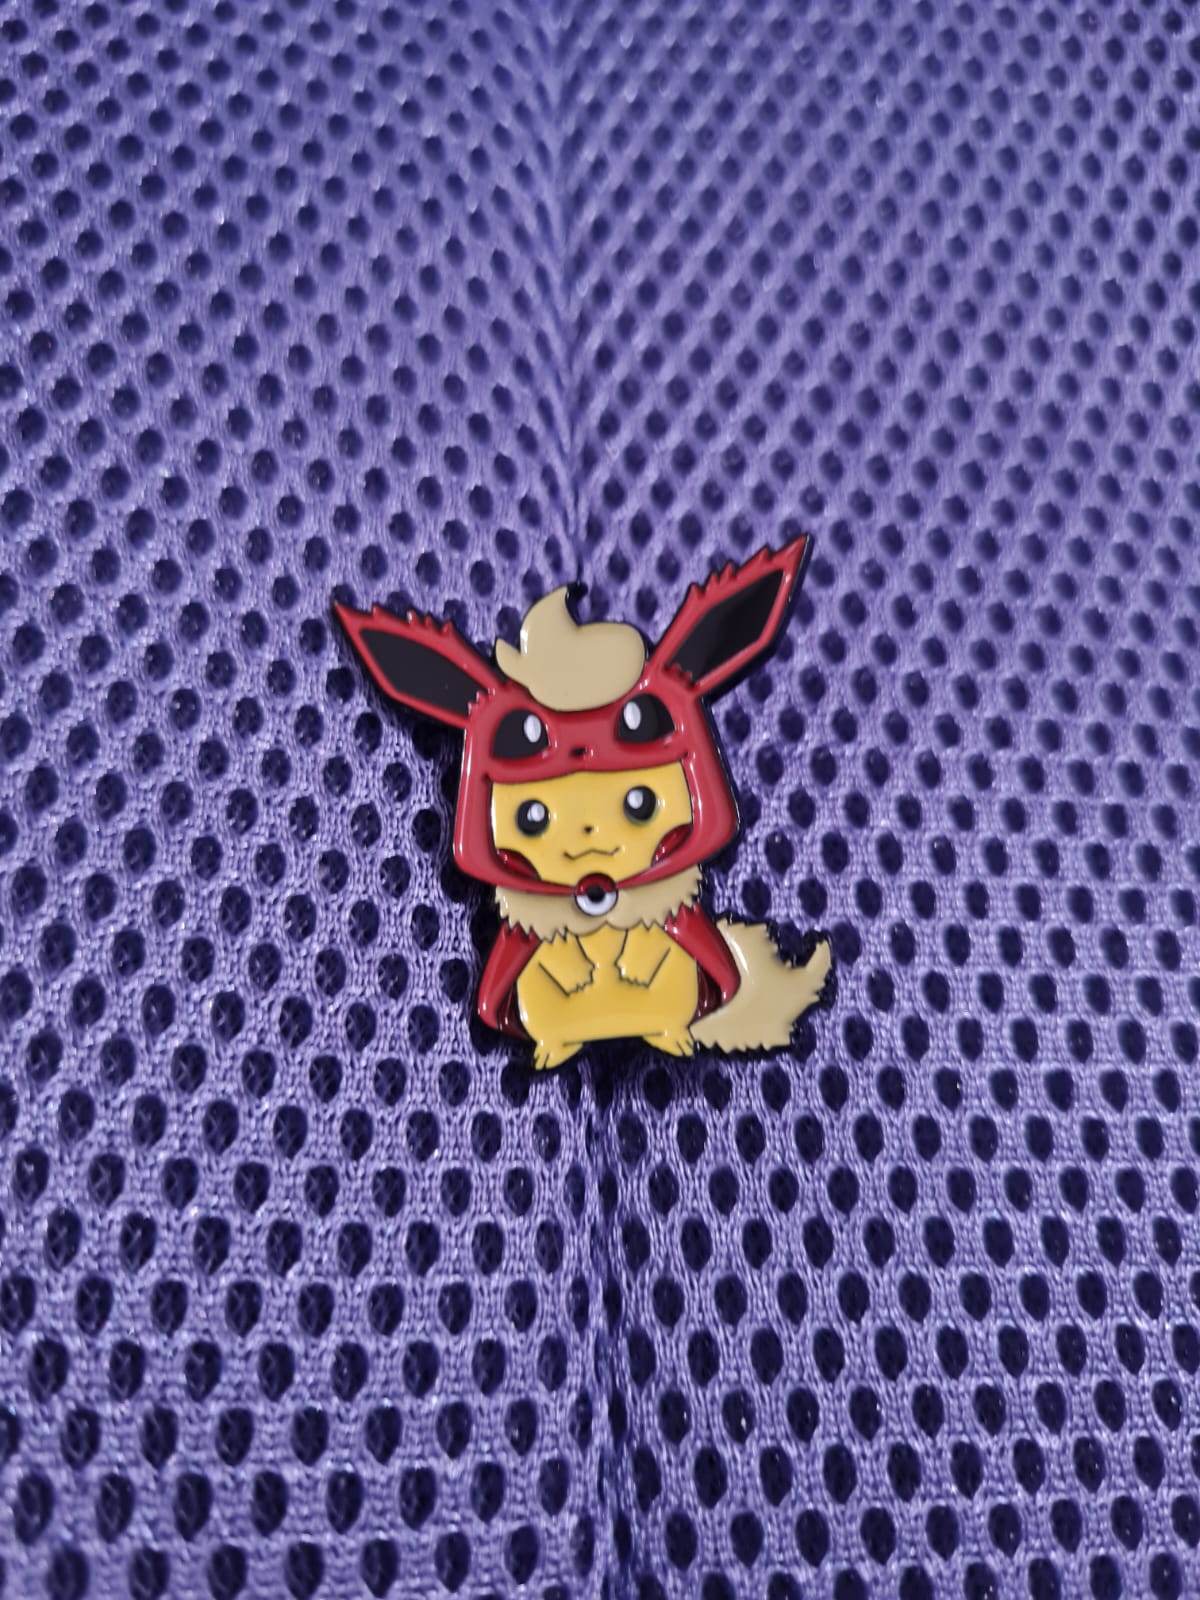 Pin Pikachu Flareon